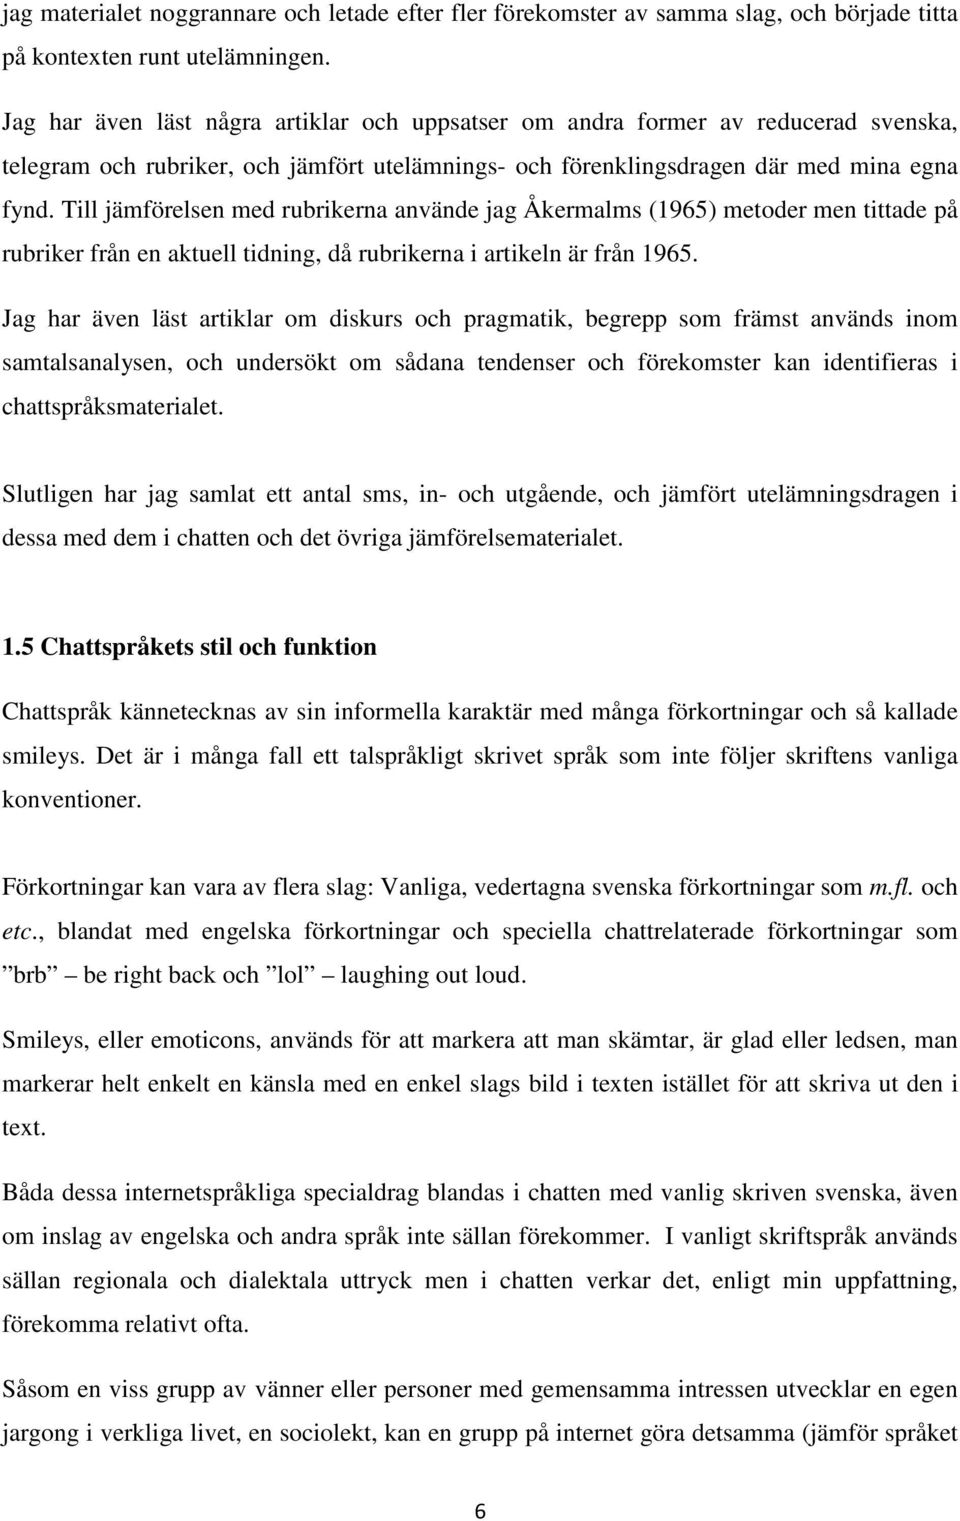 Till jämförelsen med rubrikerna använde jag Åkermalms (1965) metoder men tittade på rubriker från en aktuell tidning, då rubrikerna i artikeln är från 1965.